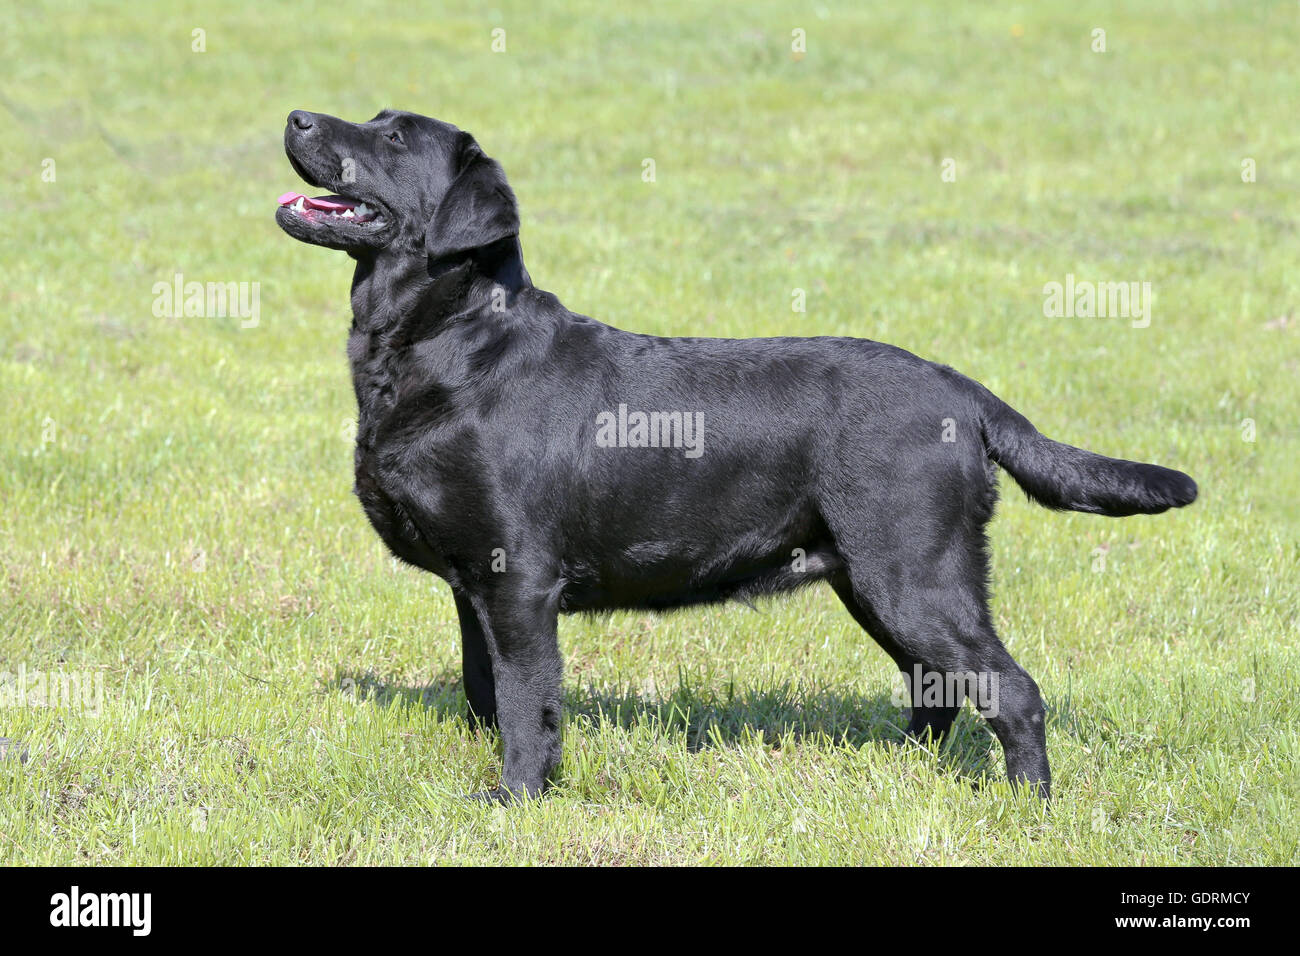 Typical  Black Labrador Retriever in the spring garden Stock Photo